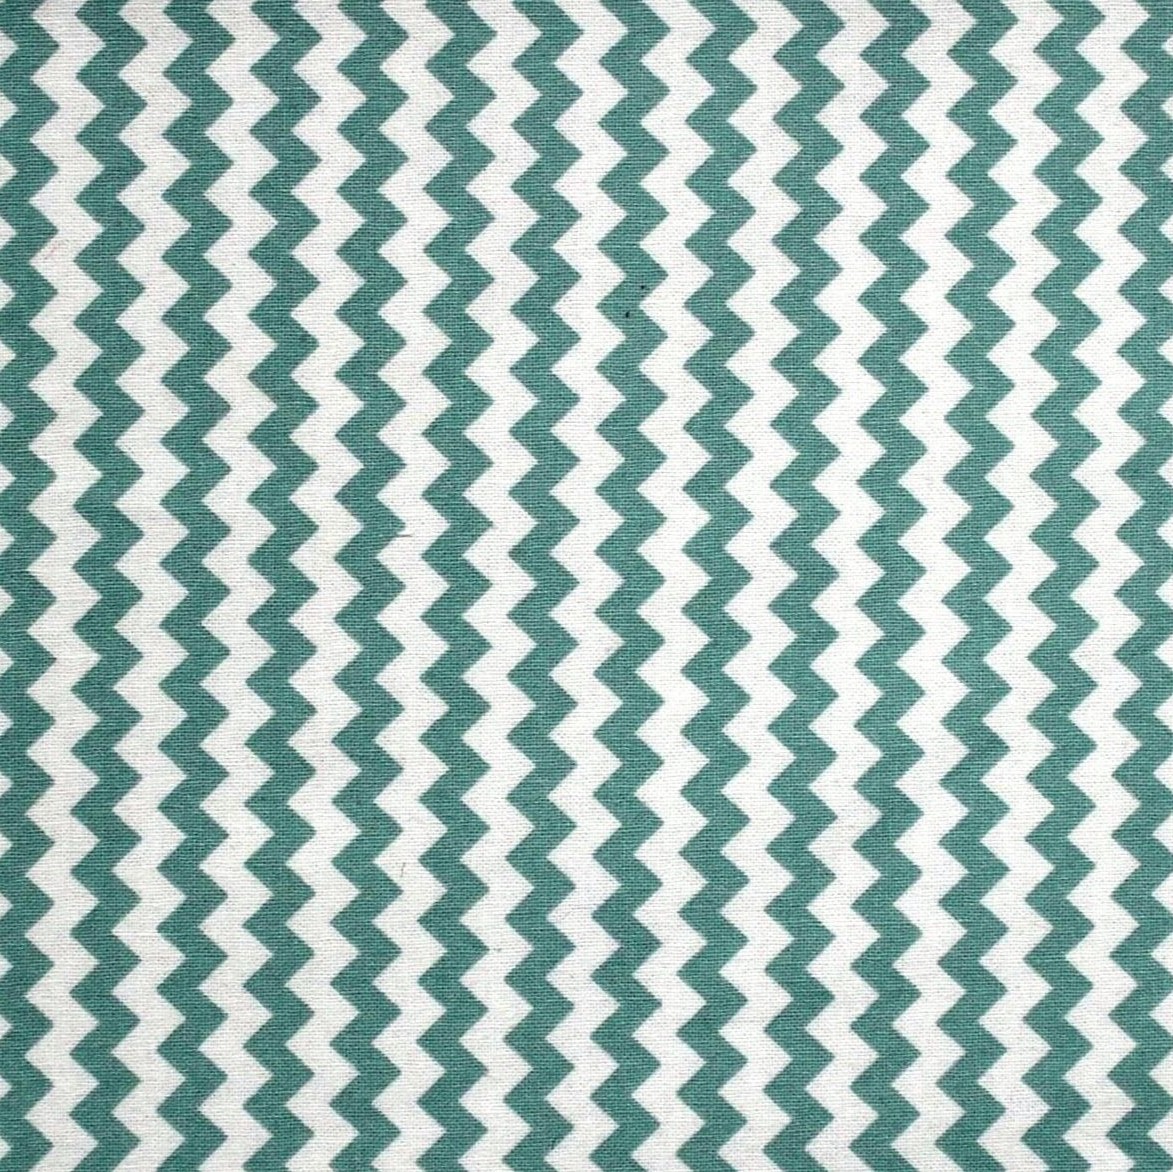 Chevron White & Green Stripes Cotton Fabric